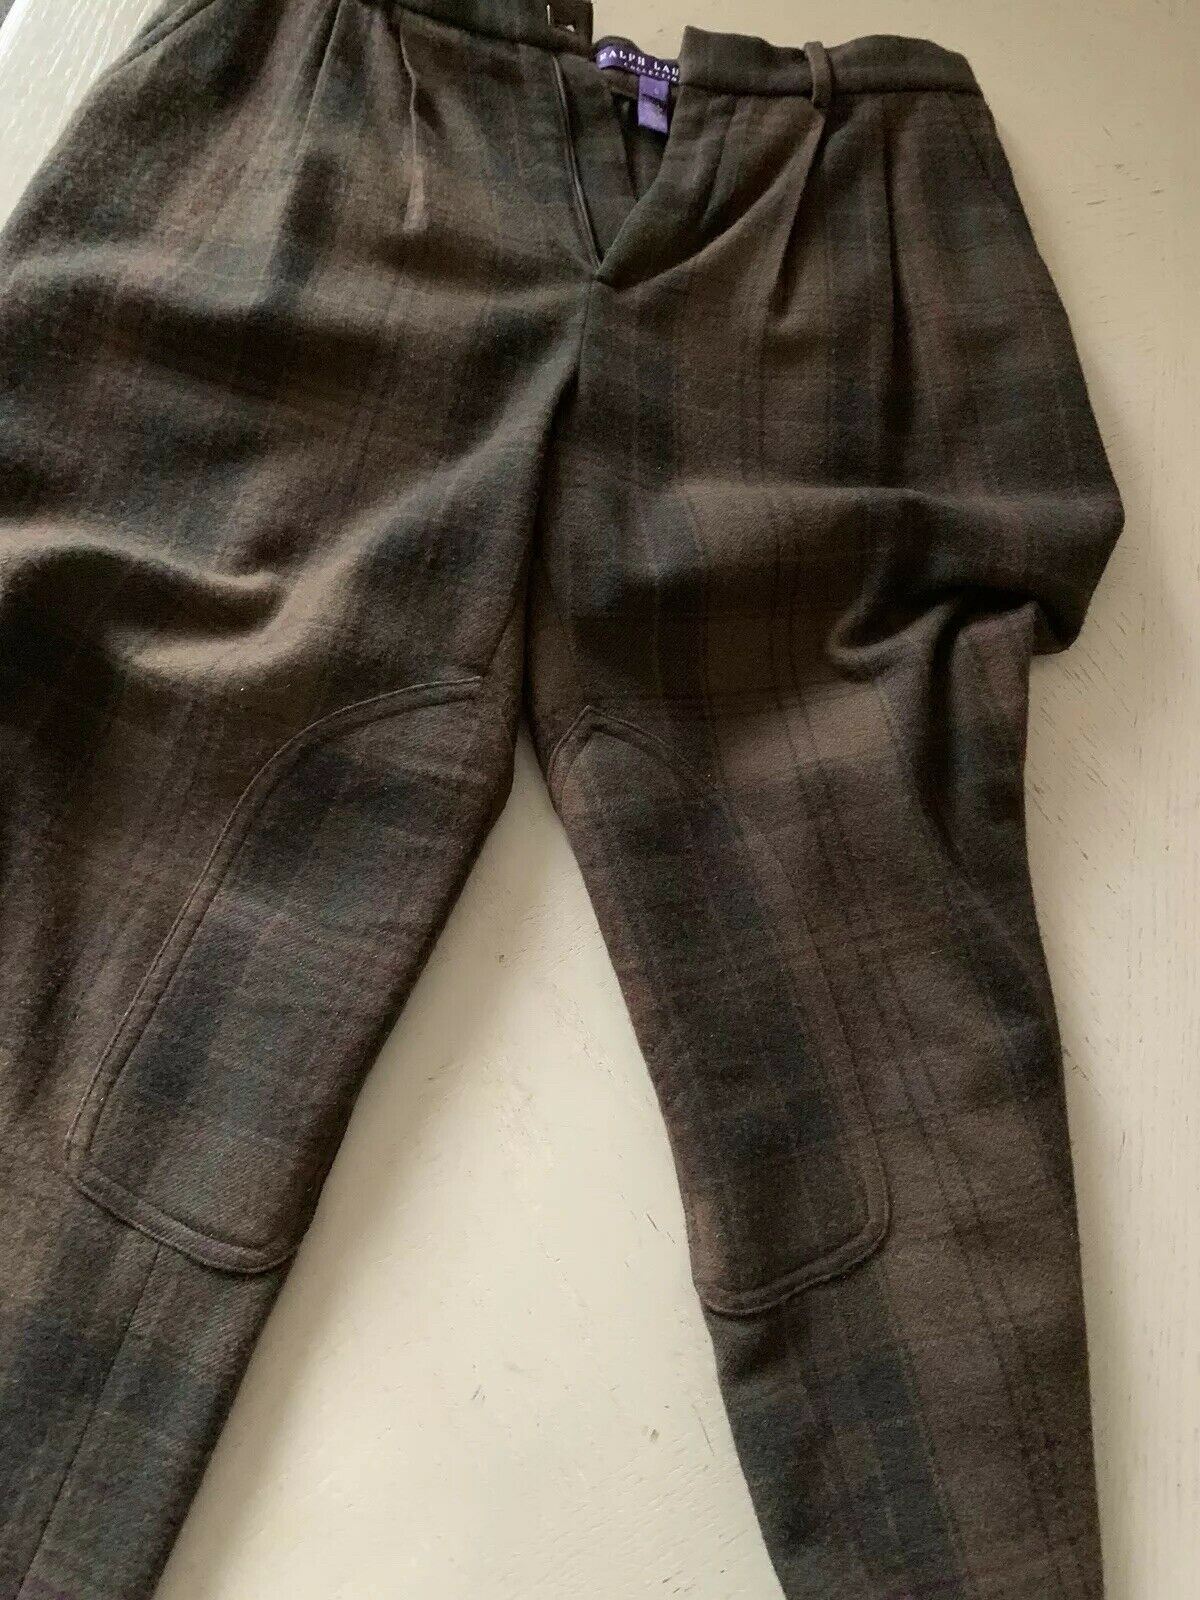 $1895 Ralph Lauren Collection Purple Label Women's Pants Brown 6 US